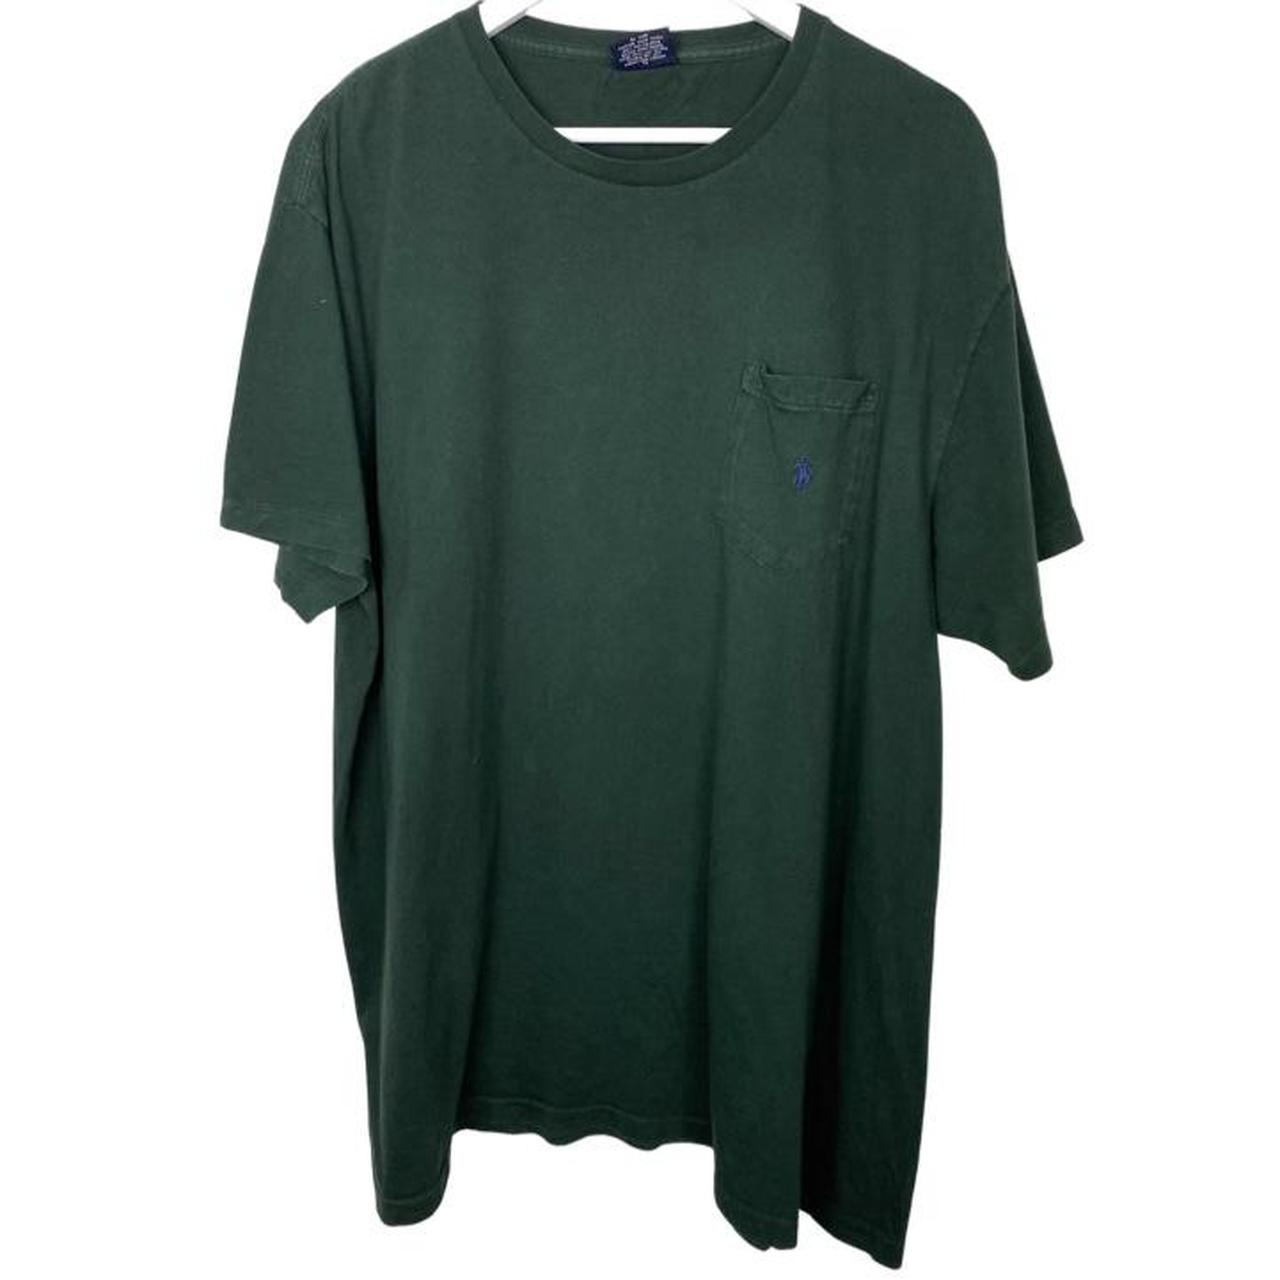 Polo Ralph Lauren T-shirt 🏷 Label: XL 📏... - Depop